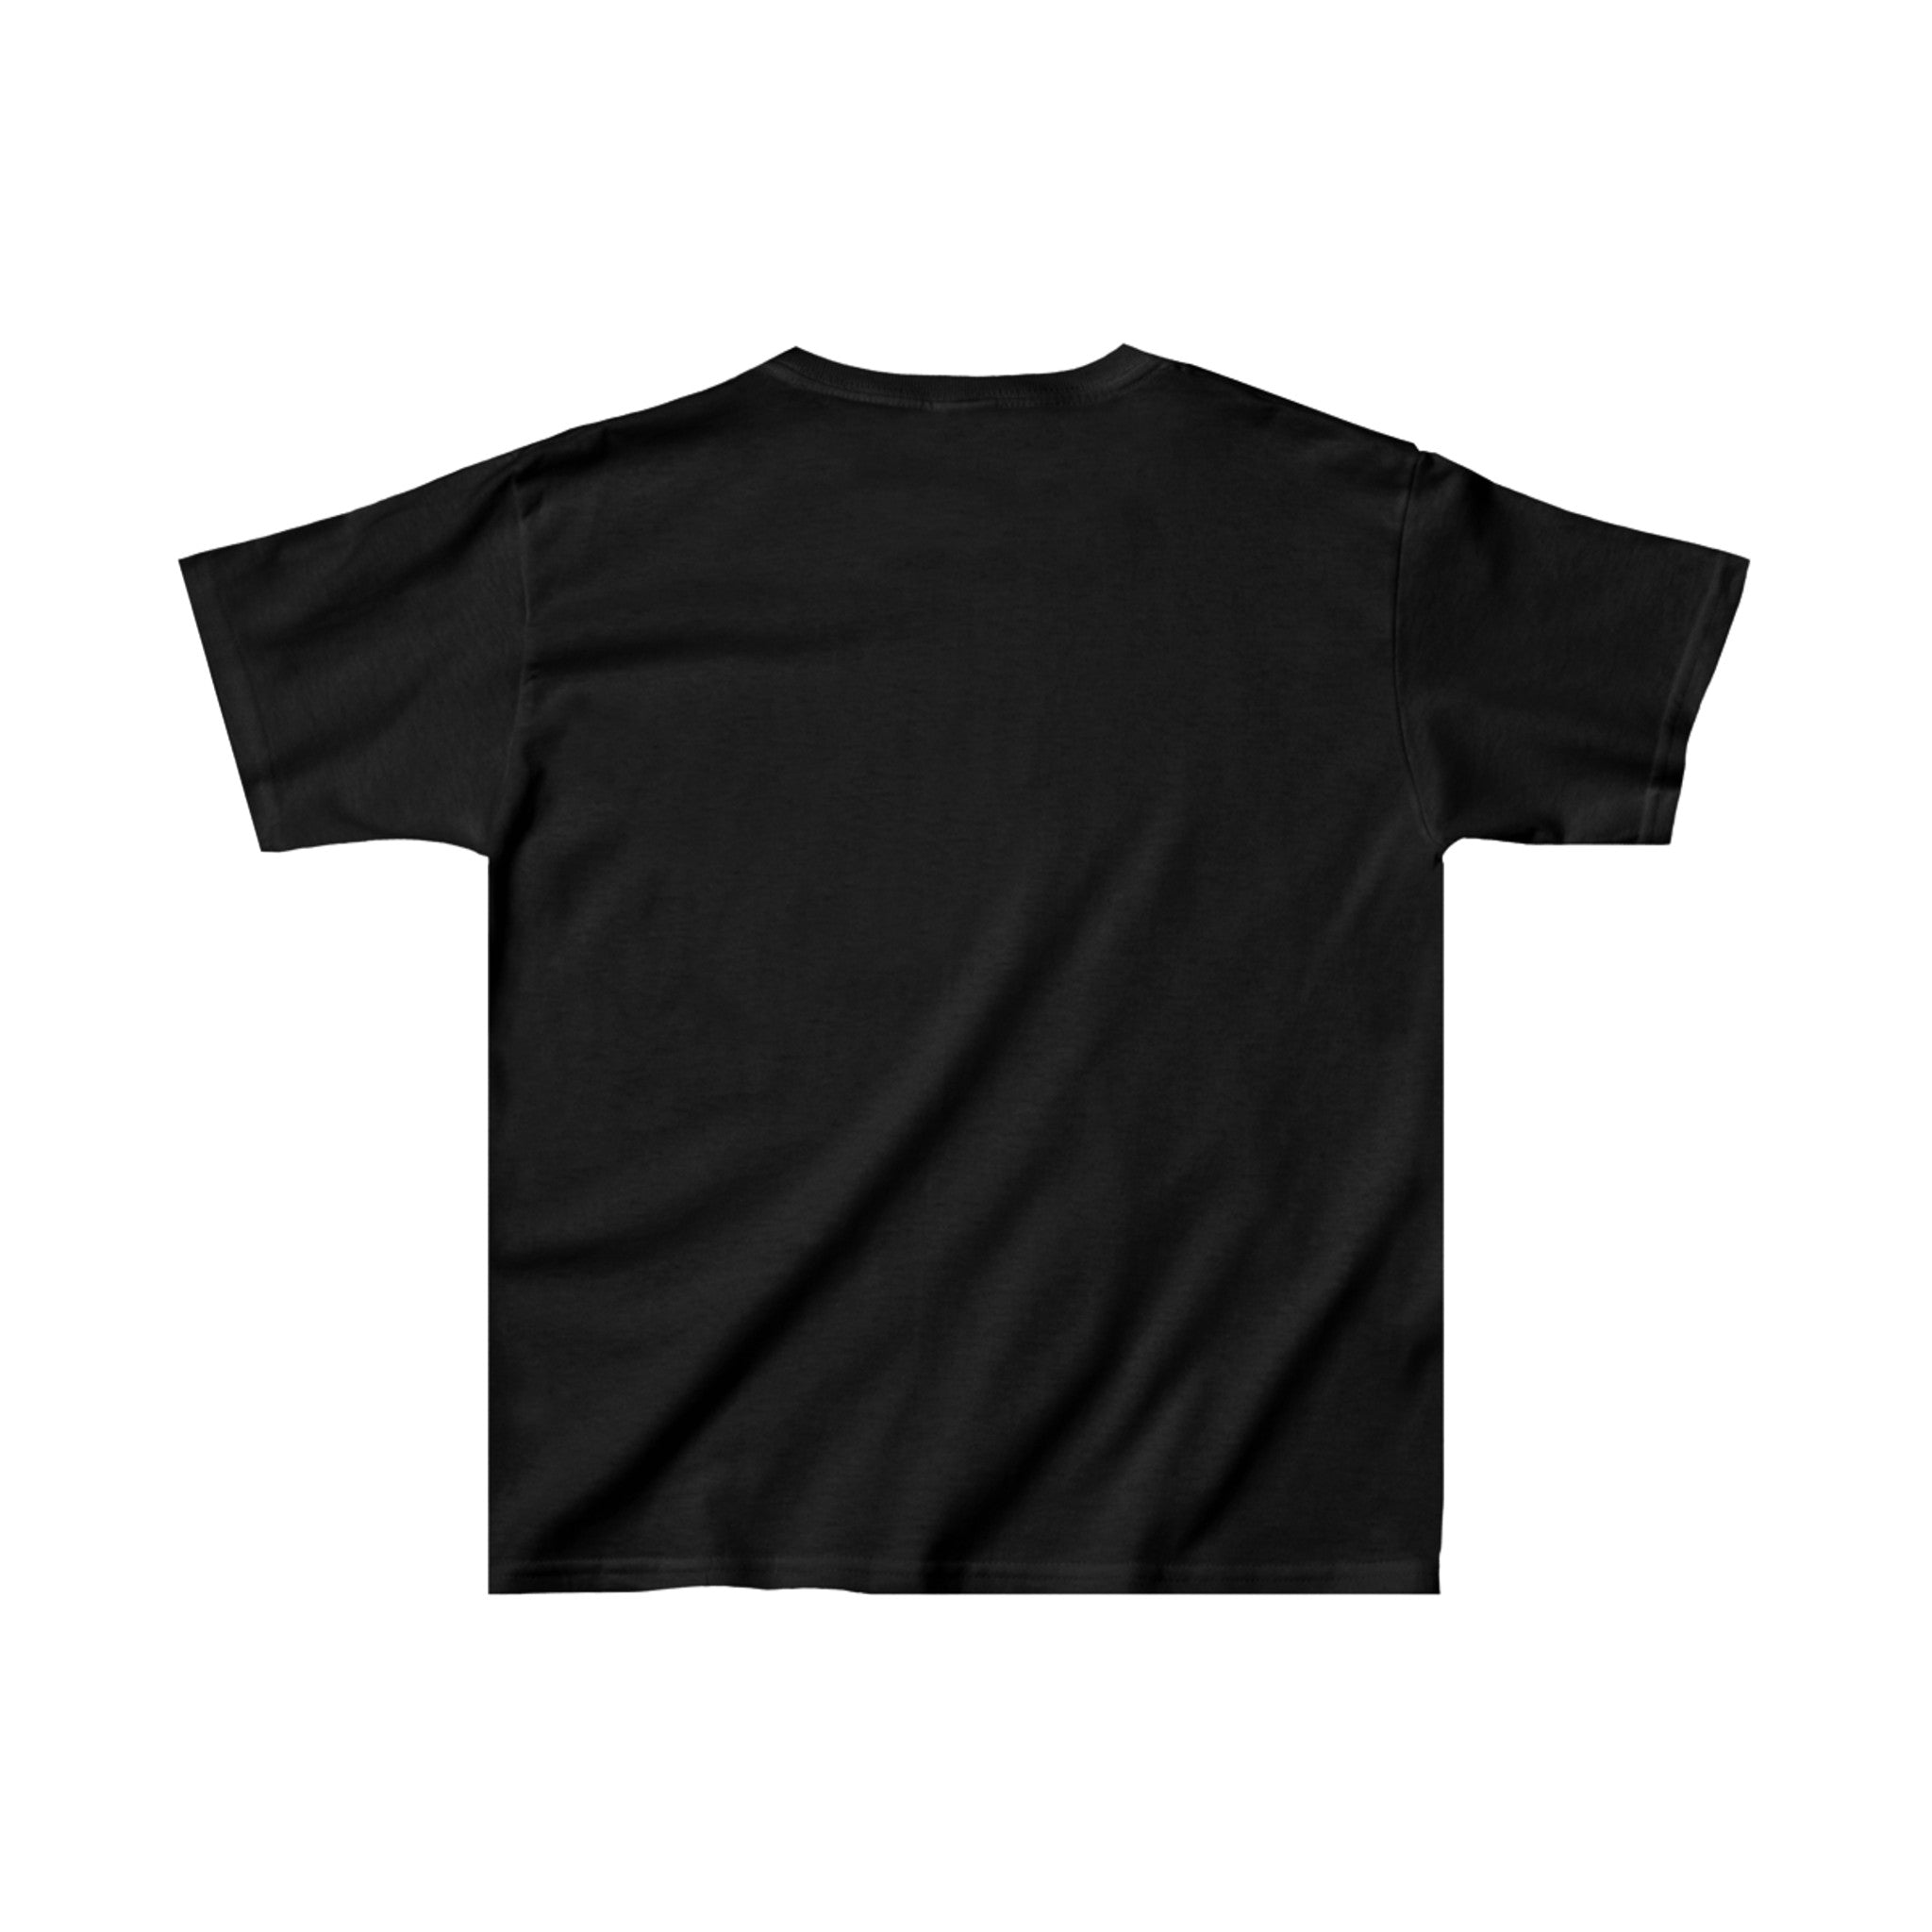 Oklahoma City Blazers 1990s T-Shirt (Youth)